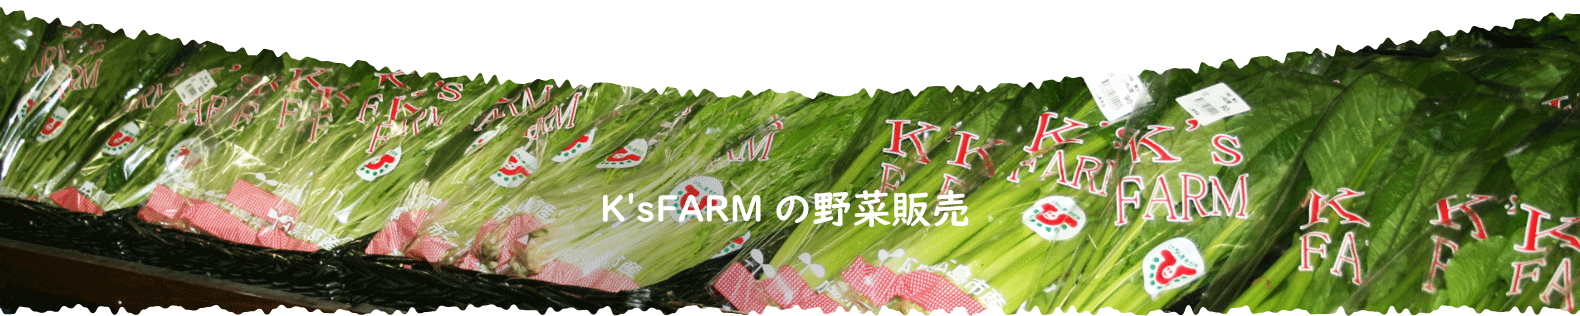 K'sFARMの野菜販売